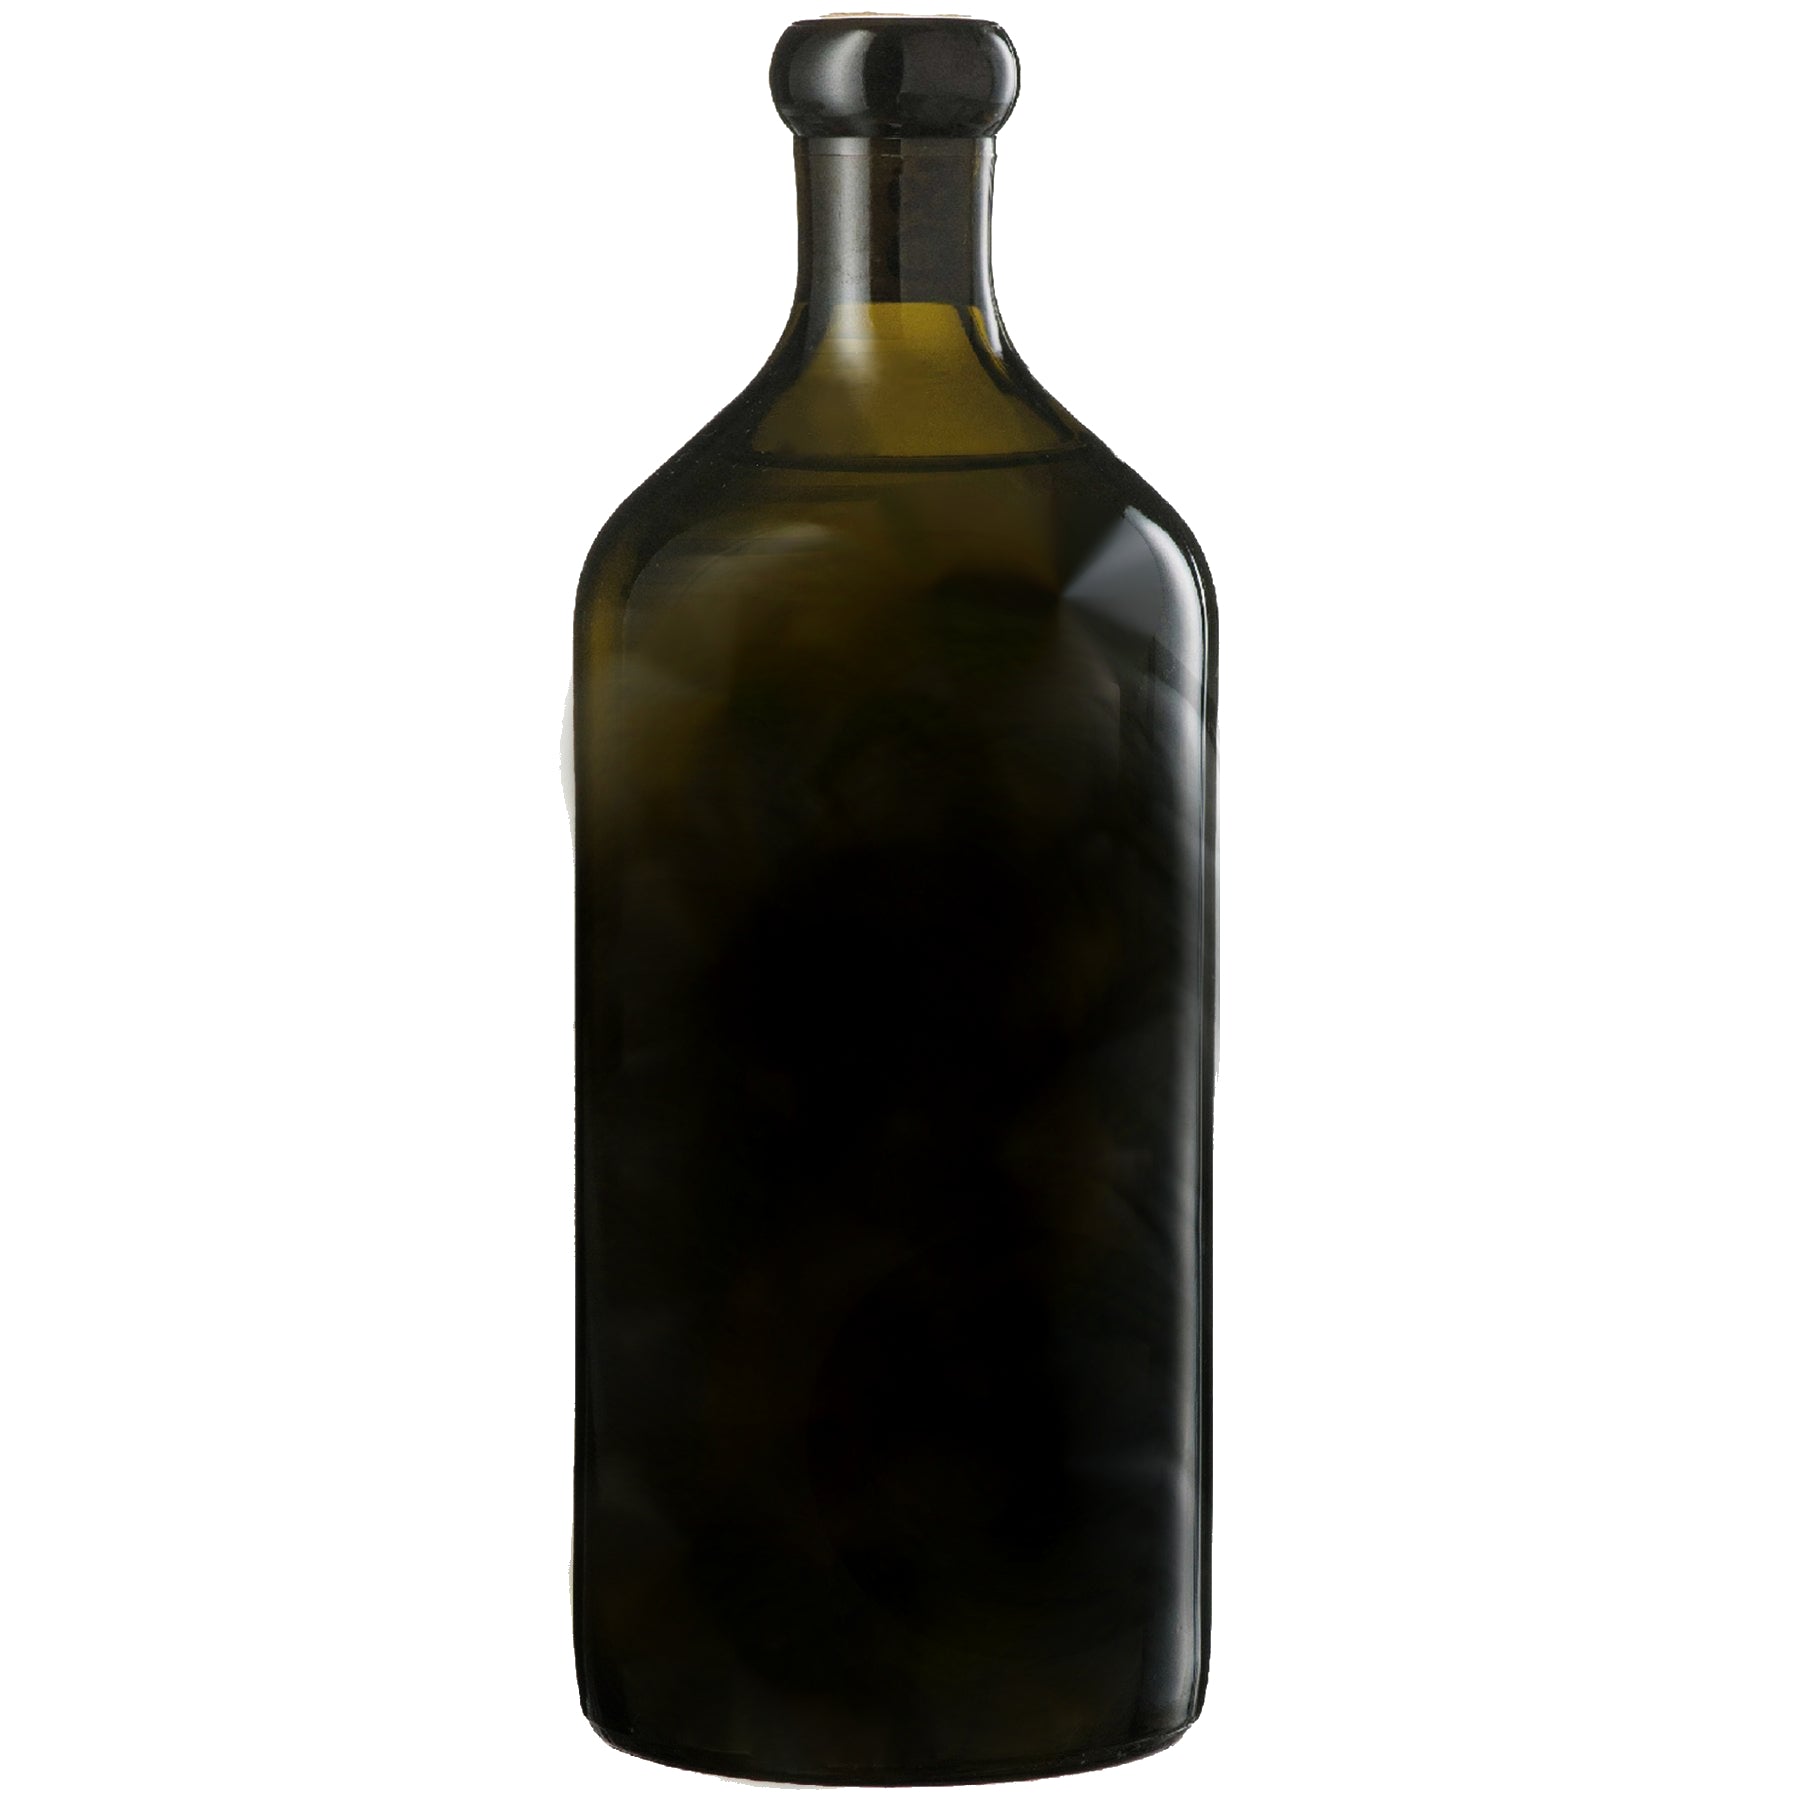 Mørk glasflaske til olivenolie fra Oliviers & Co